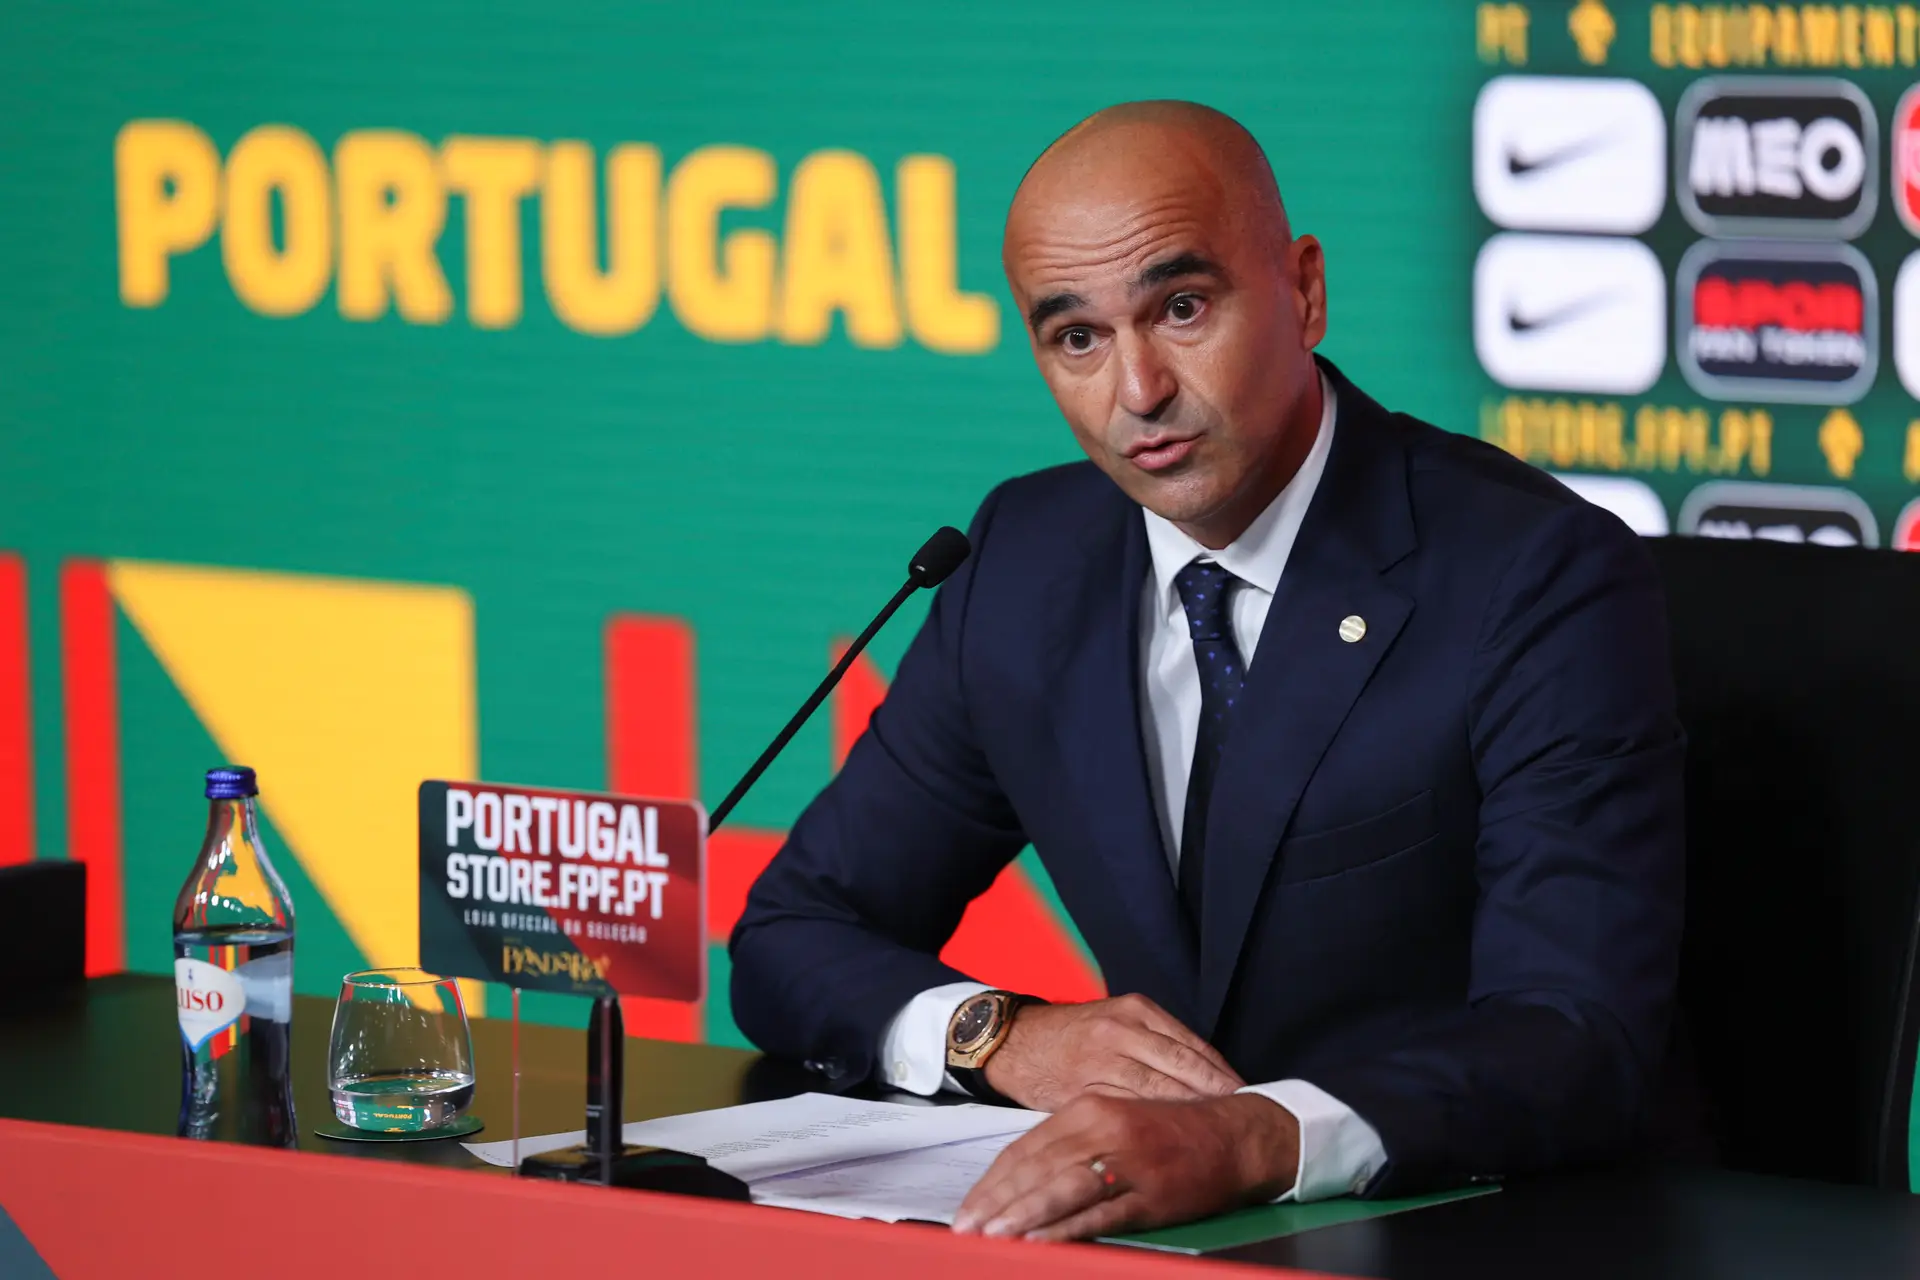 Euro 2024: os dias e horas dos jogos de Portugal